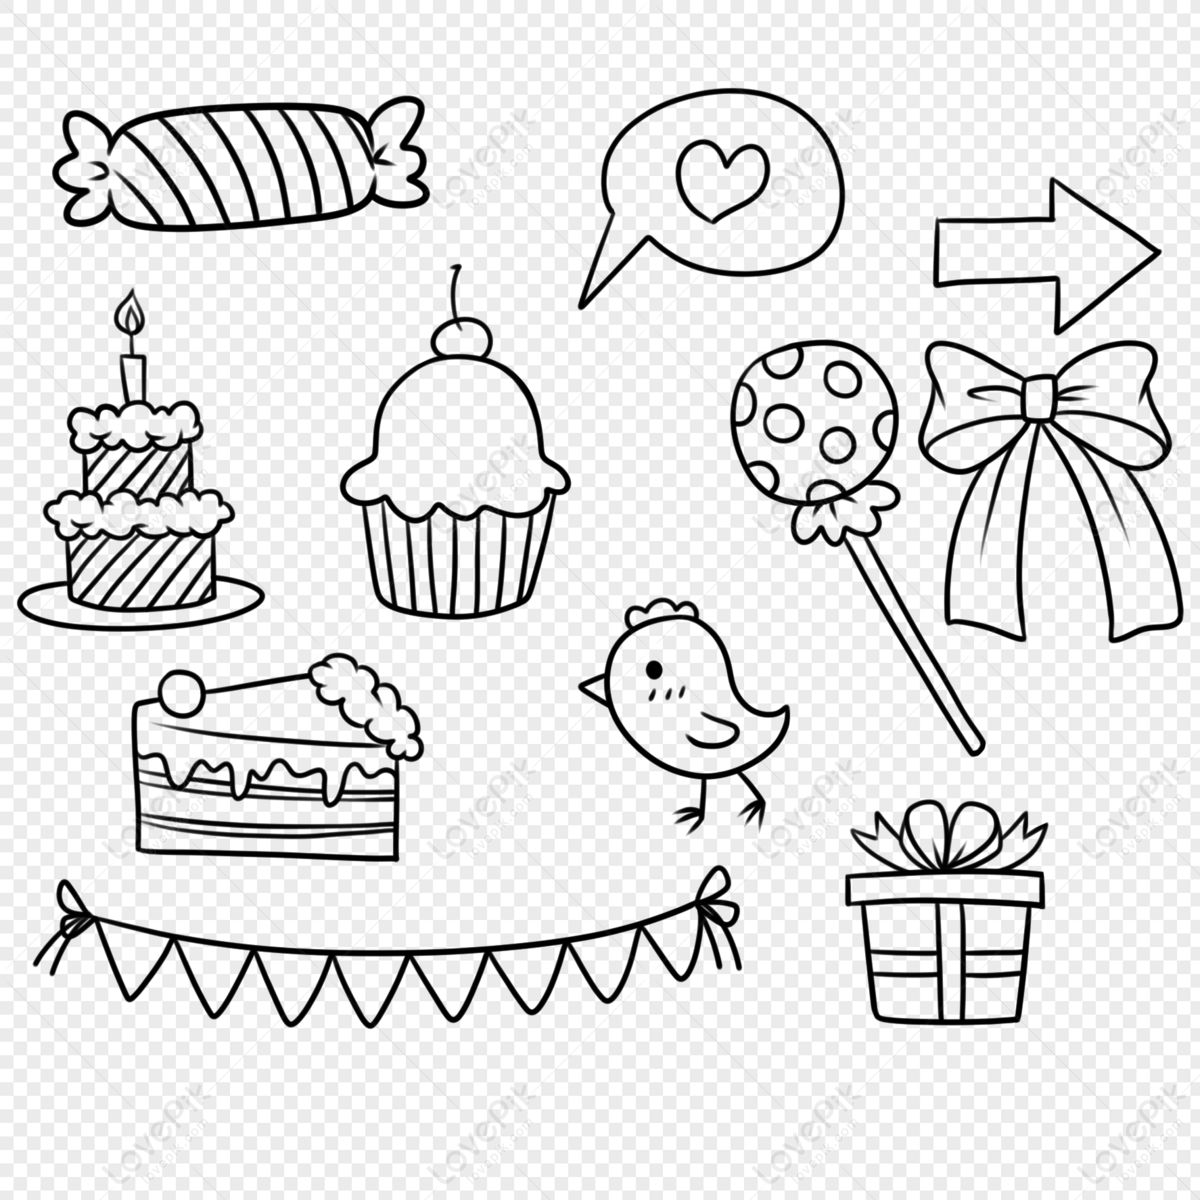 Bánh kẹo và gà luôn là lựa chọn ưu thích trong các buổi tiệc sinh nhật. Có thể bạn đã từng thấy nhiều loại bánh kẹo và gà trang trí đẹp mắt, nhưng đằng sau đó thì chúng luôn mang theo ý nghĩa đặc biệt. Đến với hình ảnh về bánh kẹo và gà quà tặng sinh nhật, bạn sẽ cảm nhận được sự tình cảm về những món quà đó.